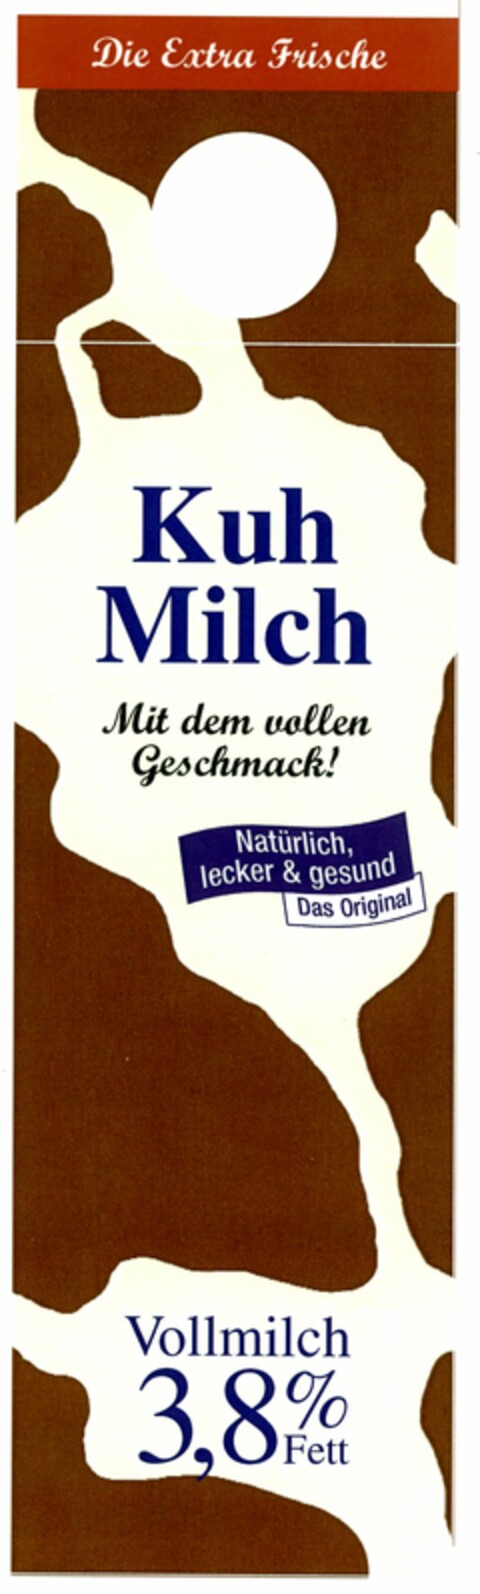 Kuh Milch Natürlich, lecker & gesund Logo (DPMA, 09.01.2006)